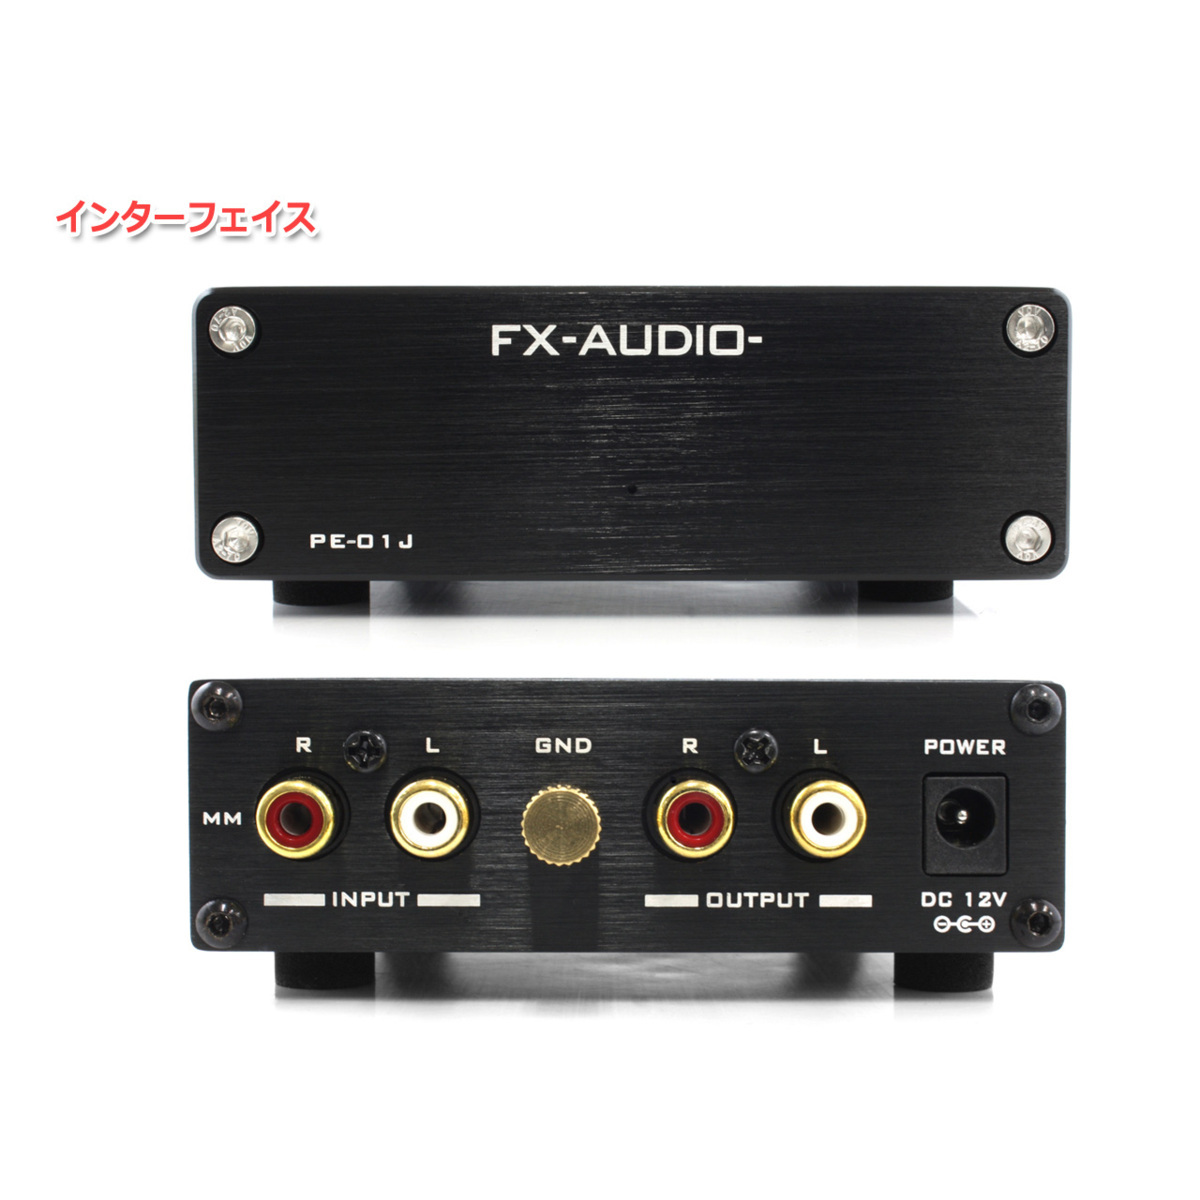 FX-AUDIO- PE-01J [ブラック] MMカートリッジ対応 フォノイコライザー プリアンプ_画像2